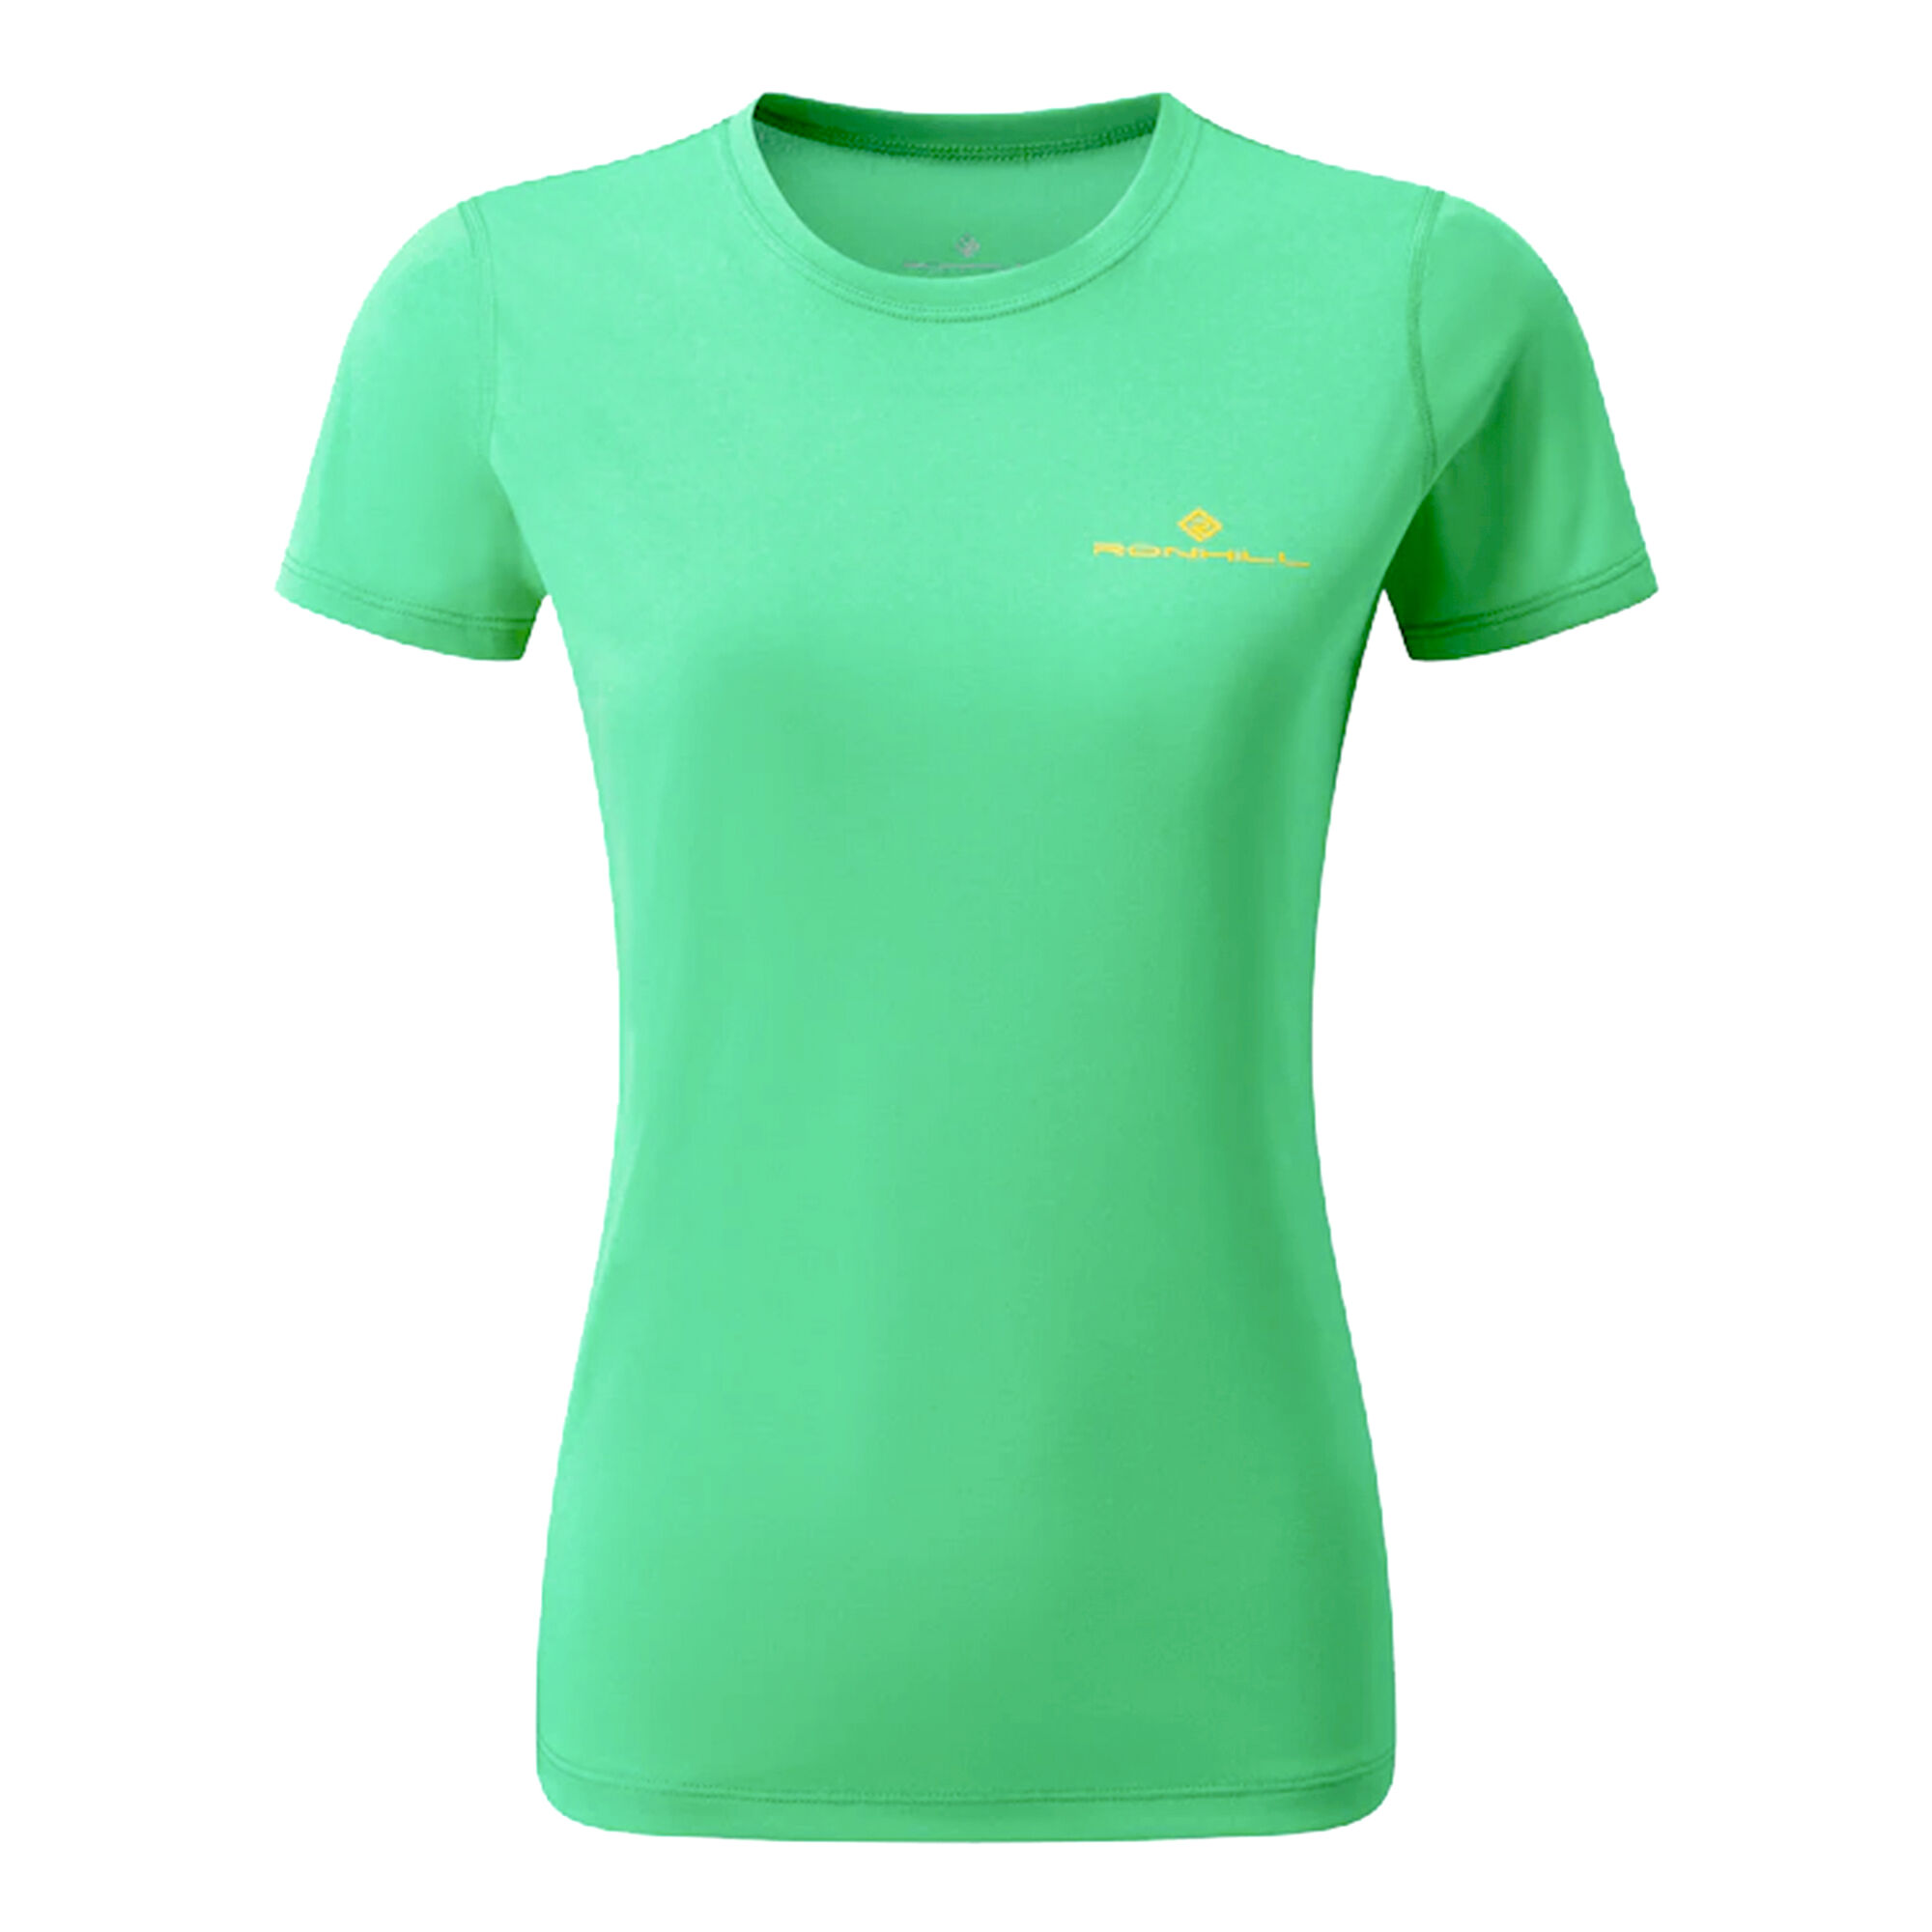 Buy Ronhill Core Running Shirts Women Green online